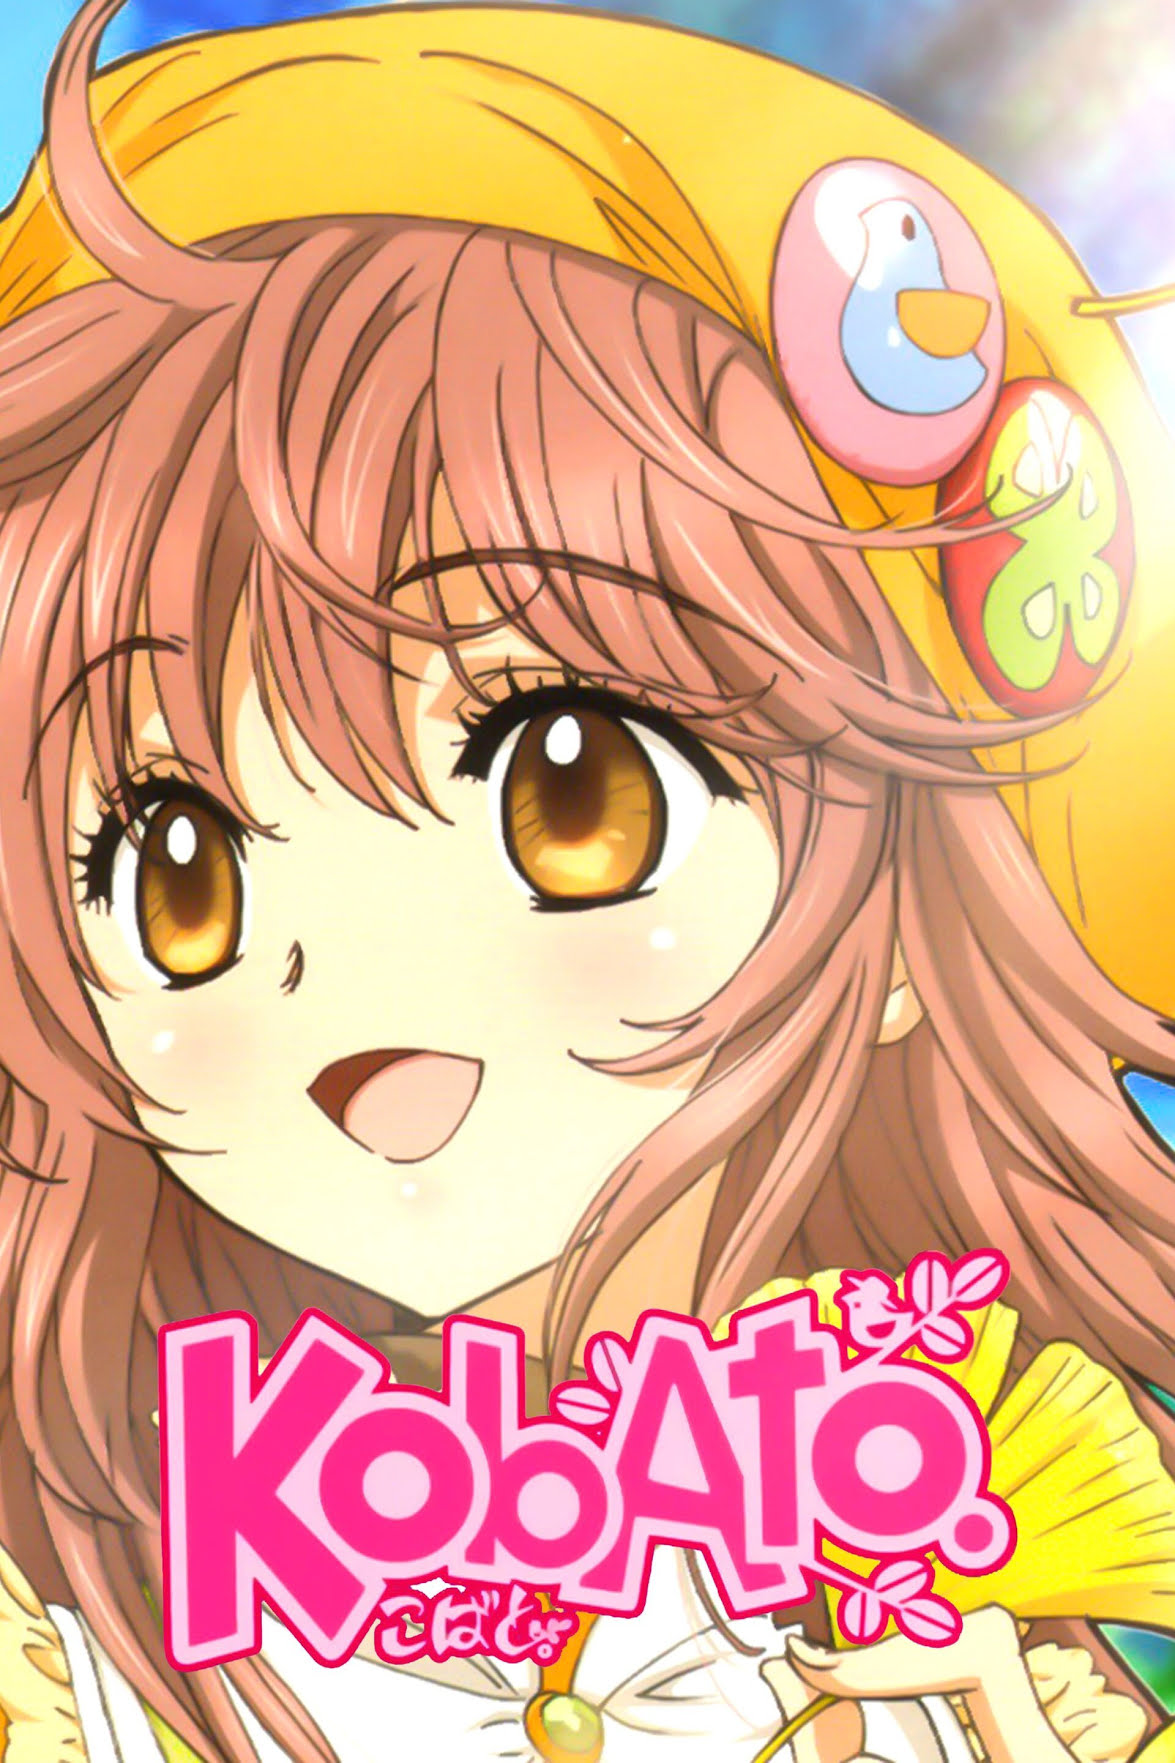 Kobato. Anime Cover